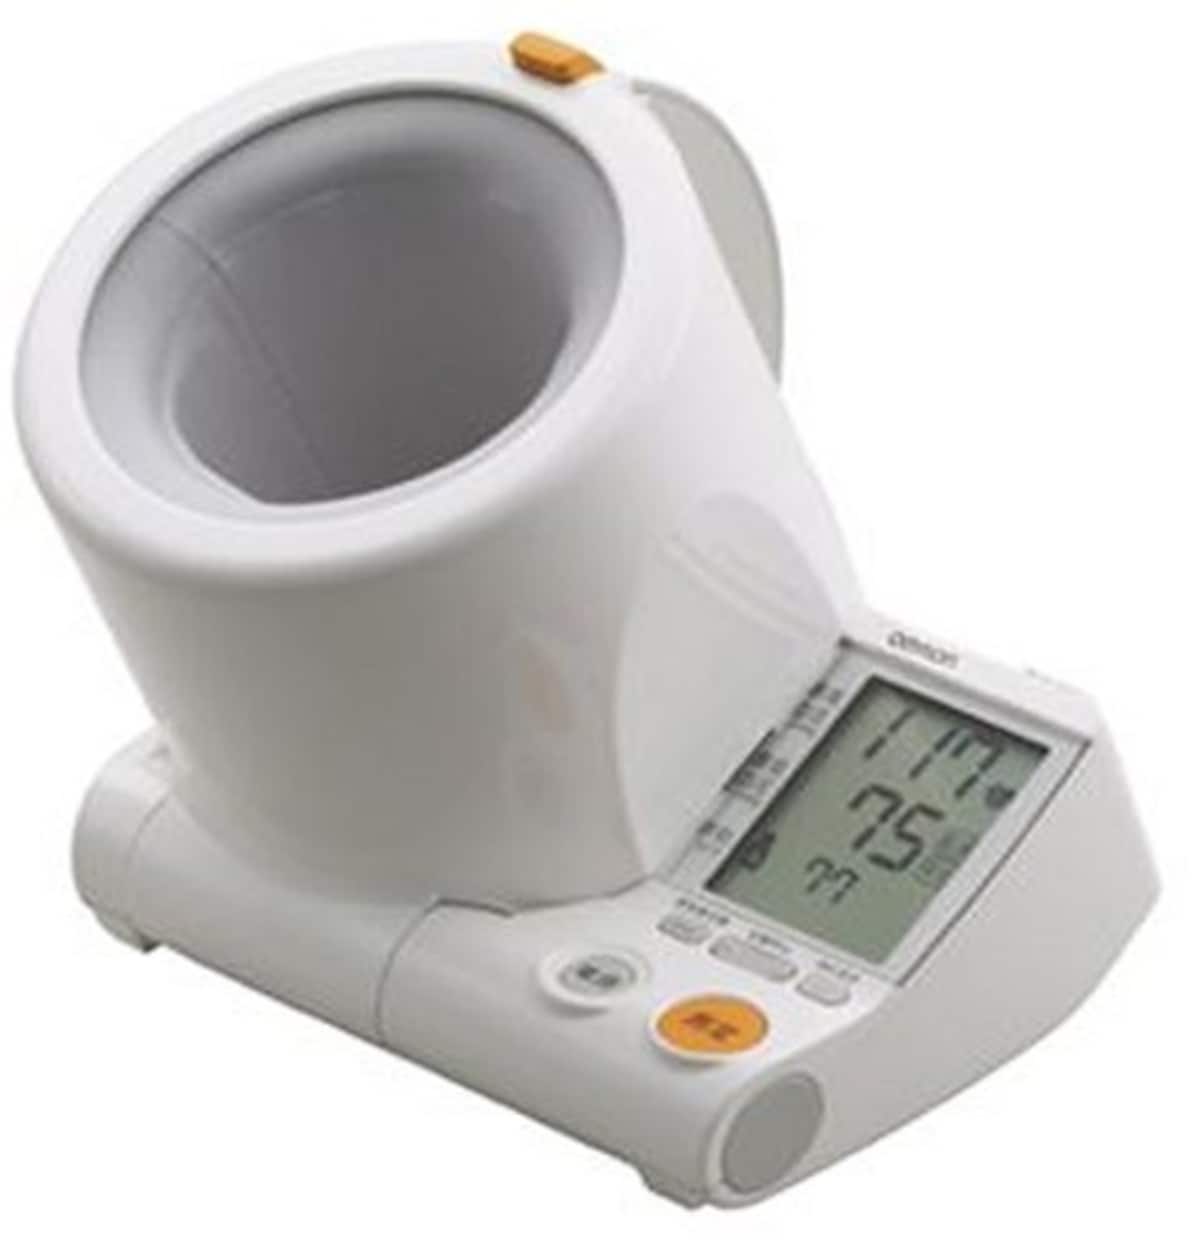 スポットアーム デジタル自動血圧計画像